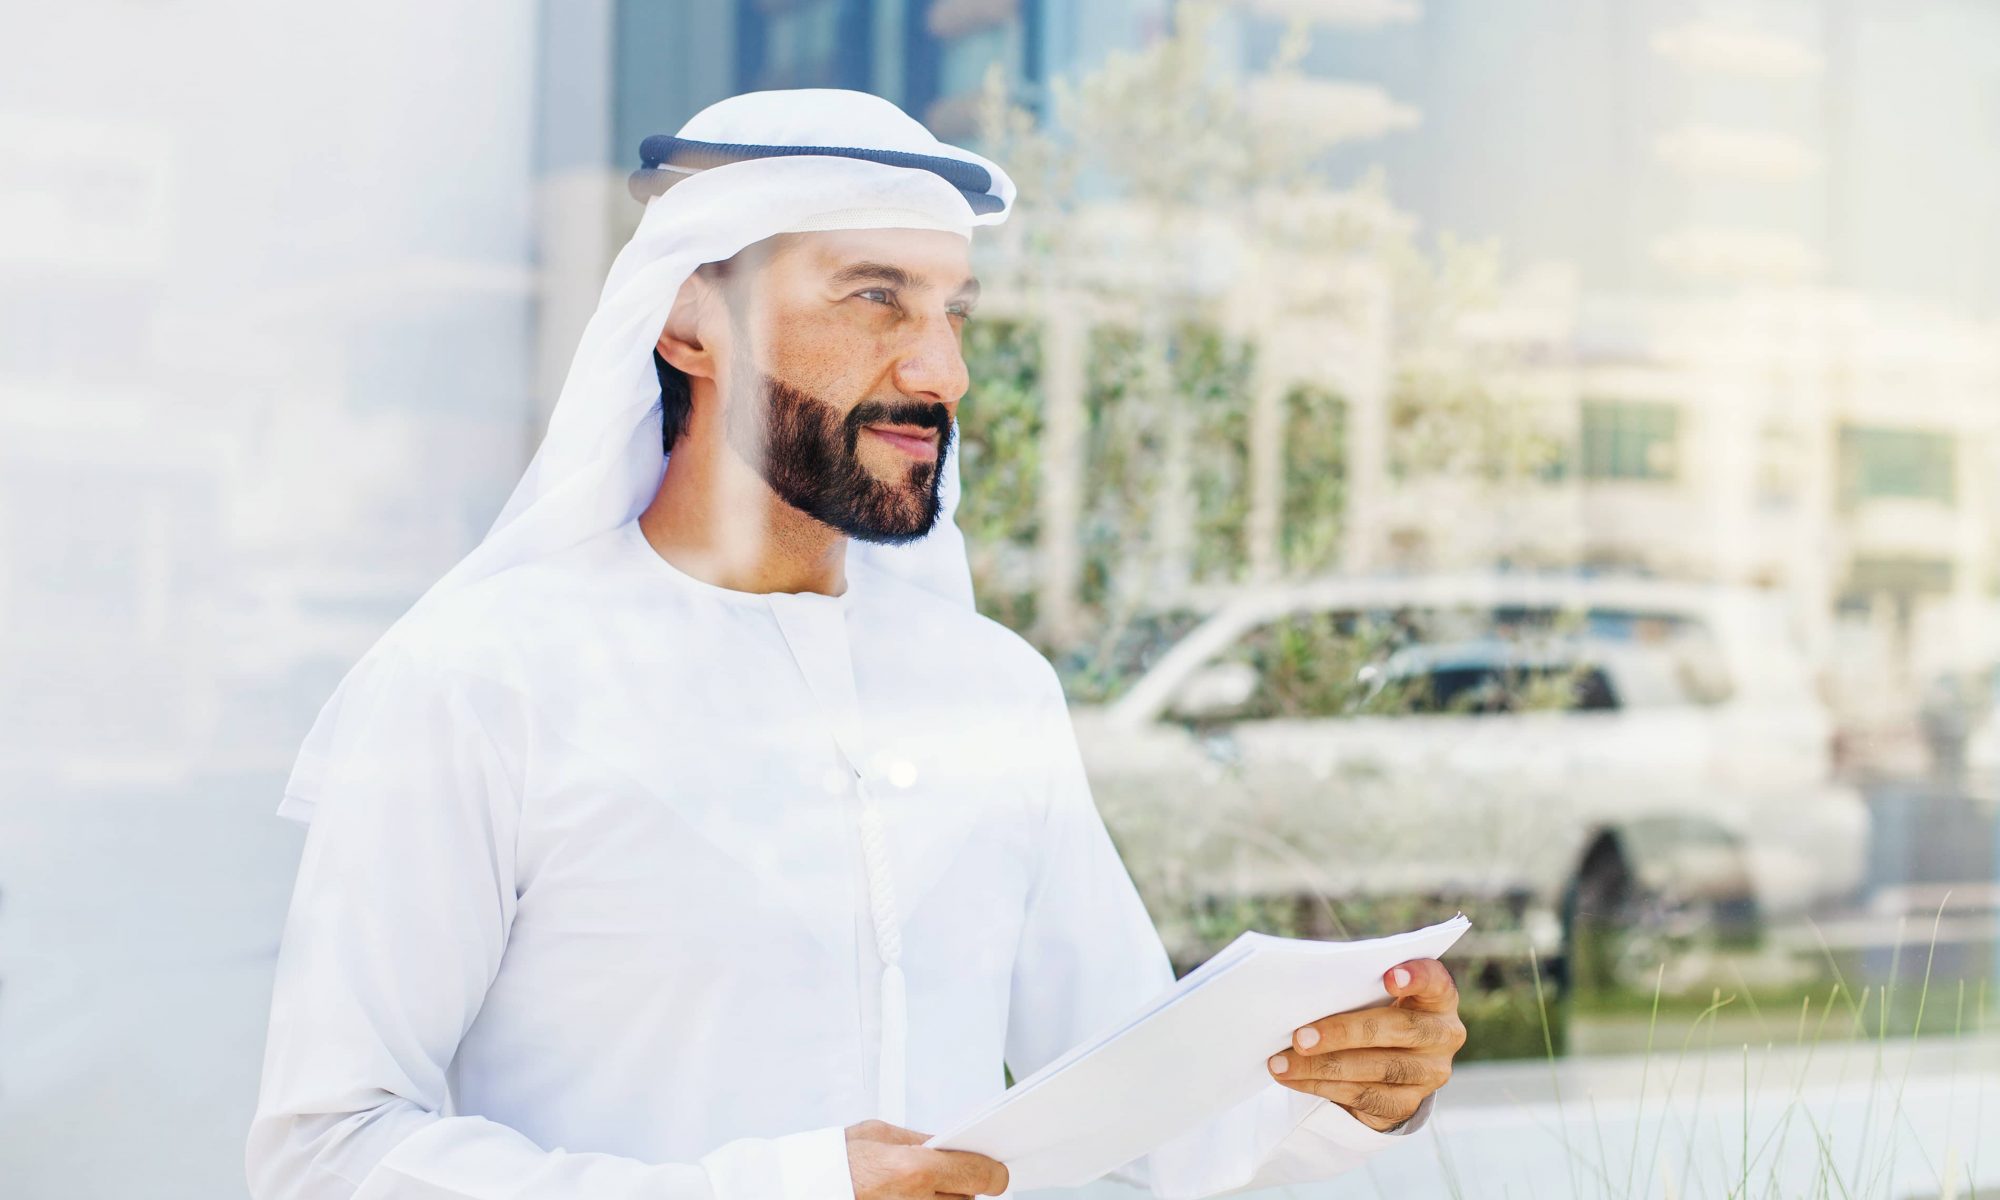 UAE insurance market